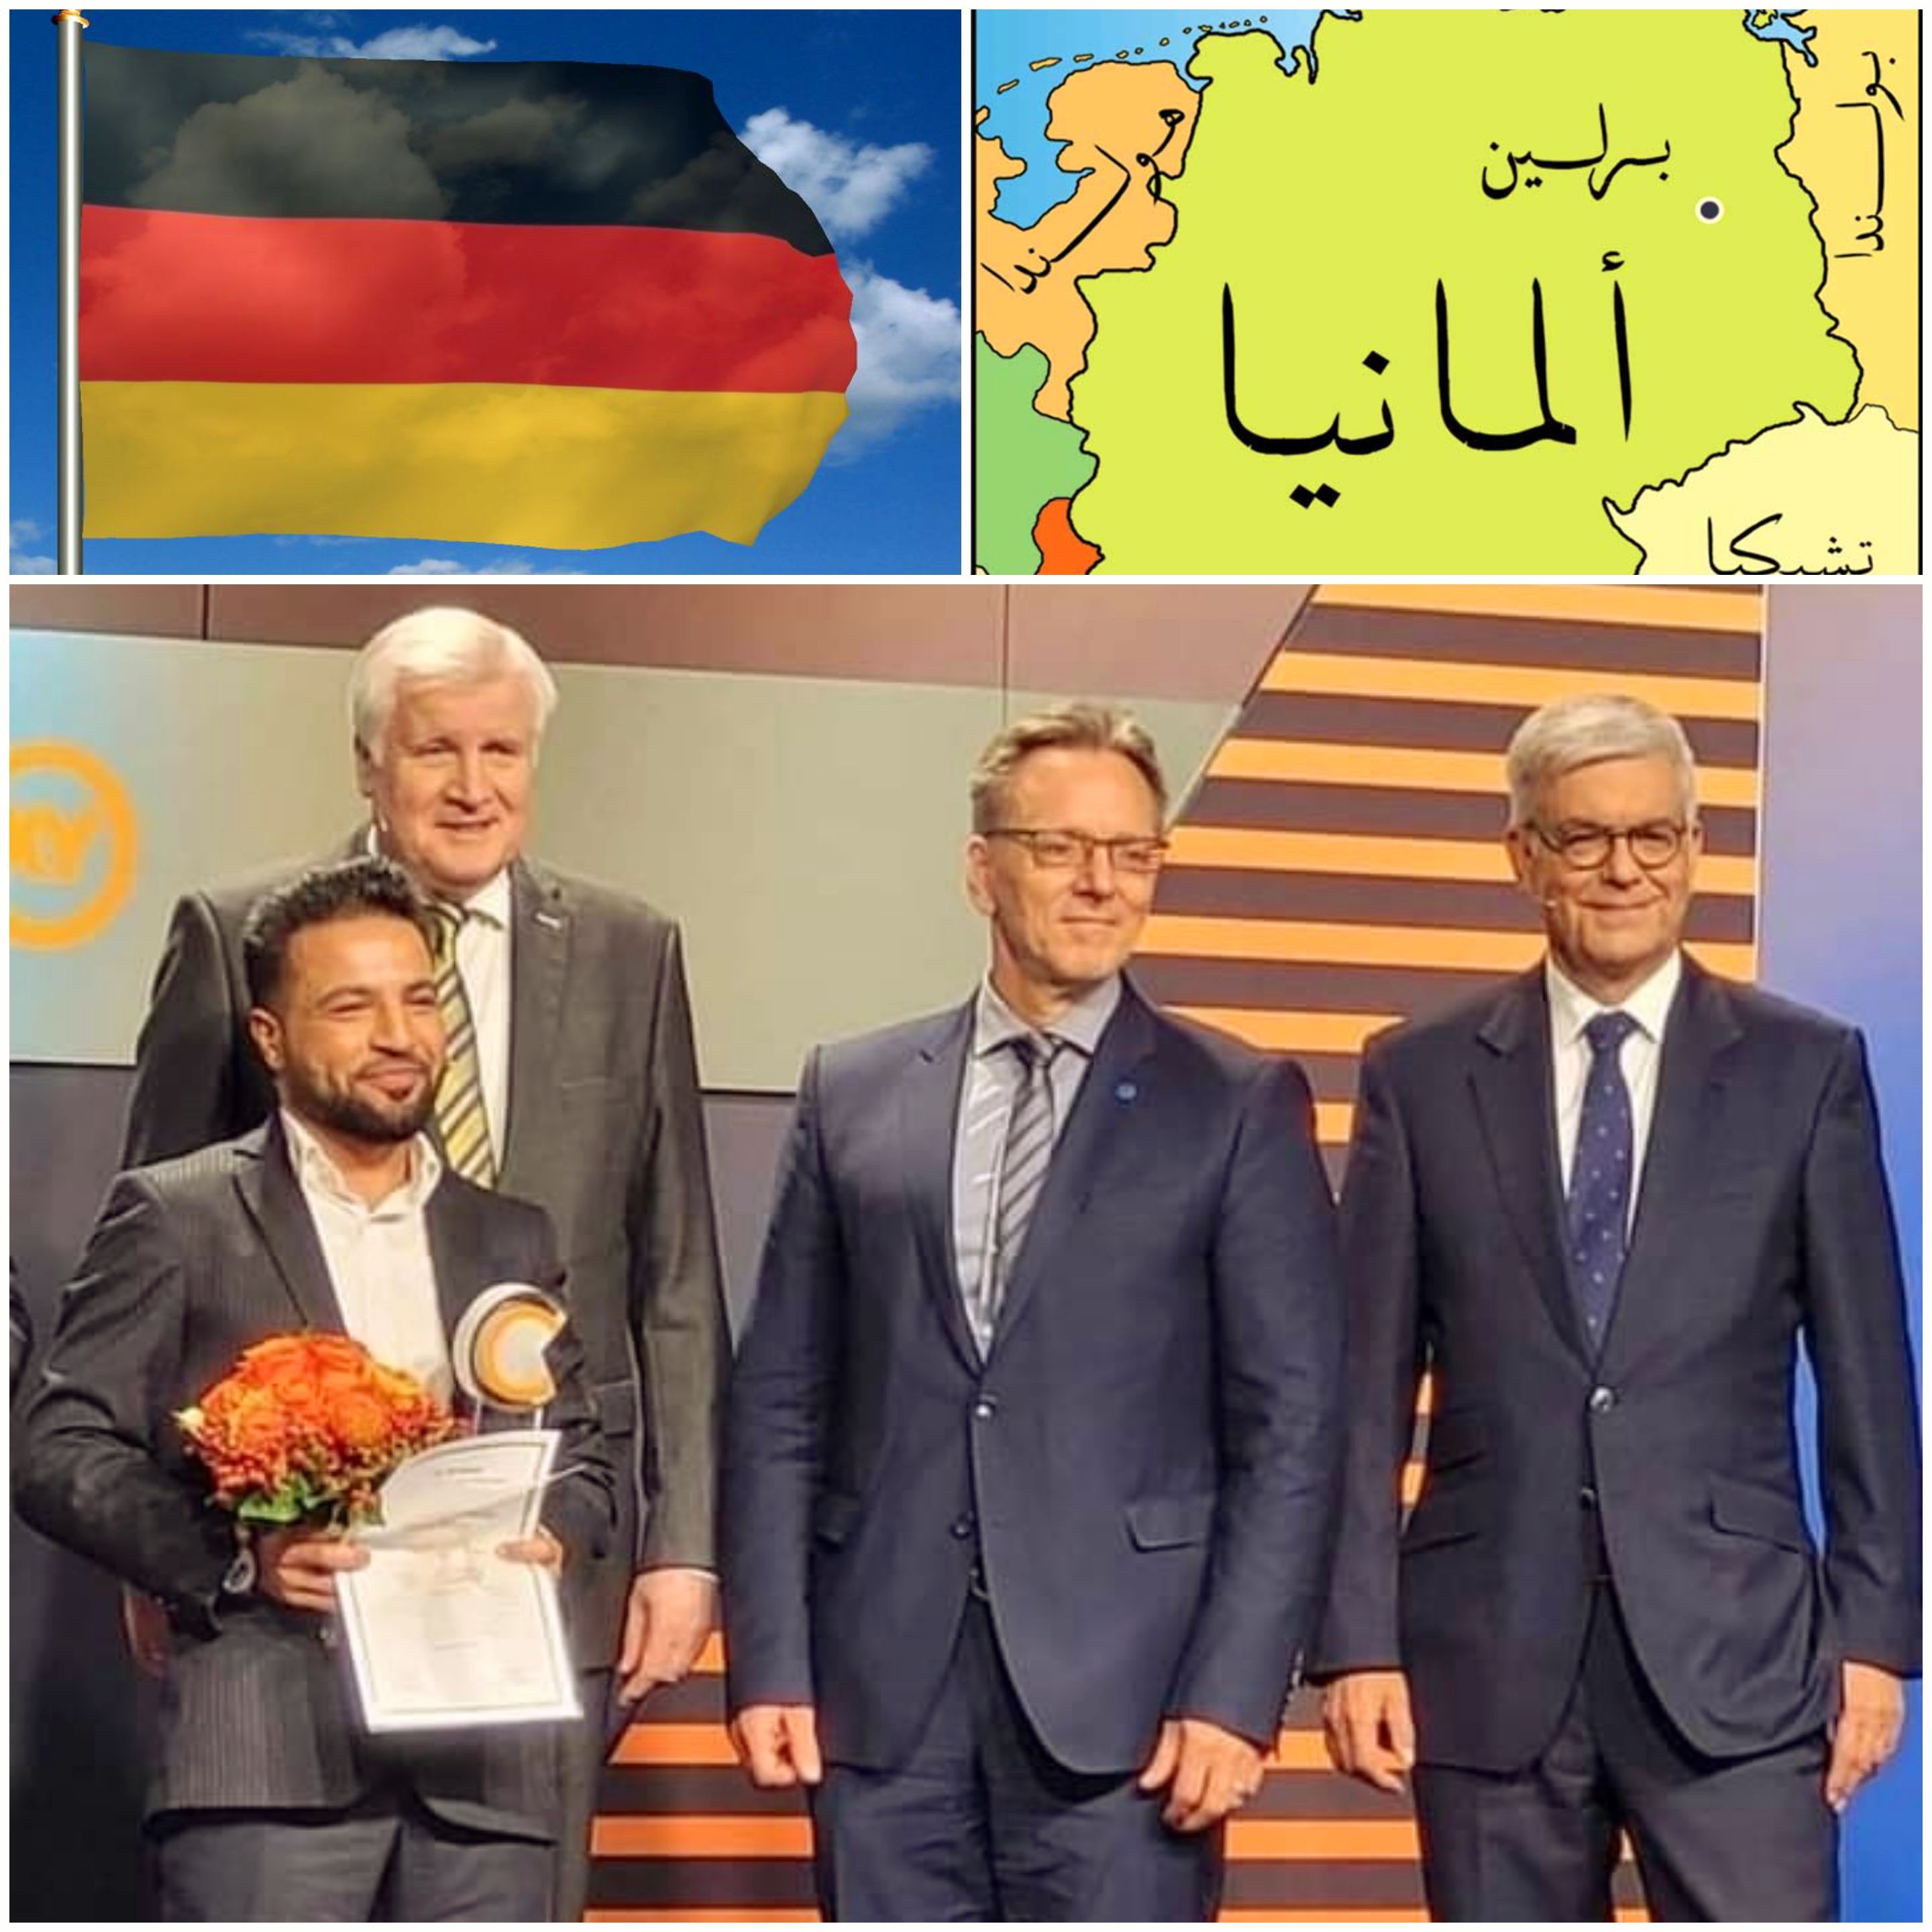 منحت الحكومة الألمانية وسام الشجاعة الوطني لمسلم من أصول عربية أنقذ شخصًا ألمانيًا من الطعن